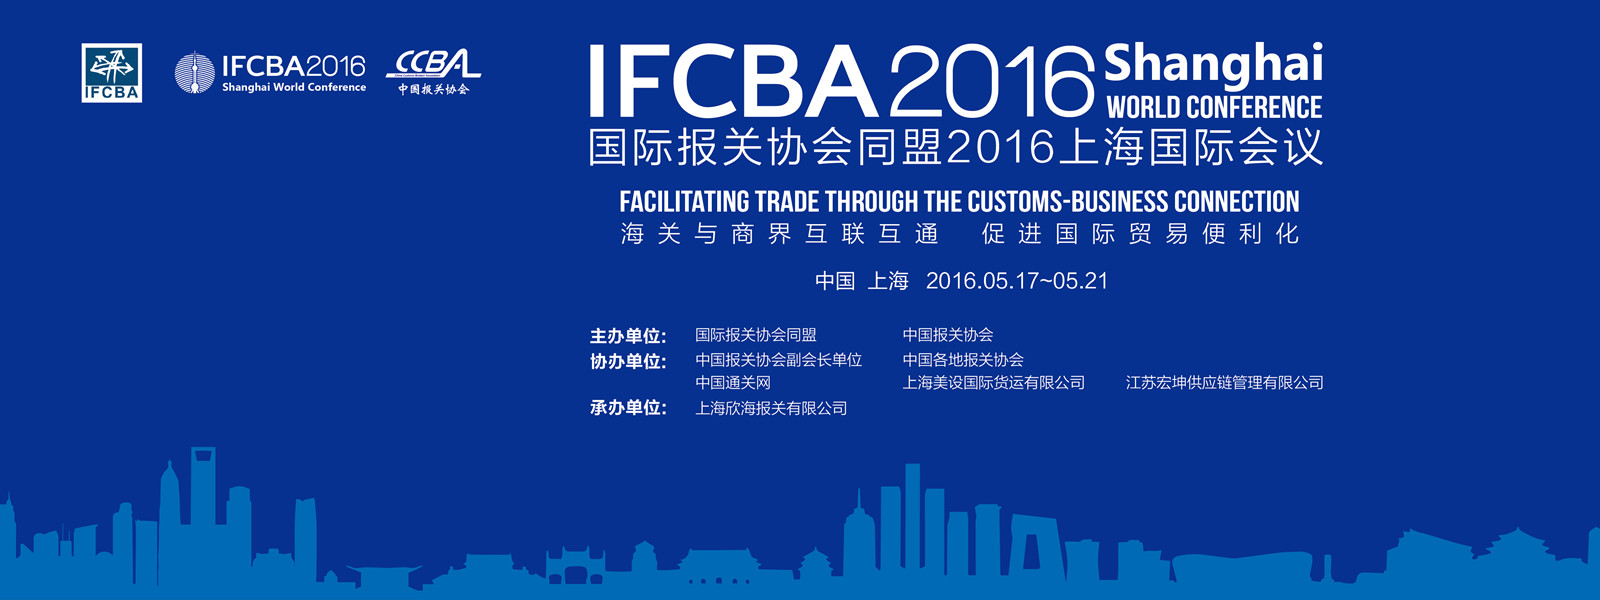 2016IFCBA花絮30—IFCBA2016上海年会顺利闭幕